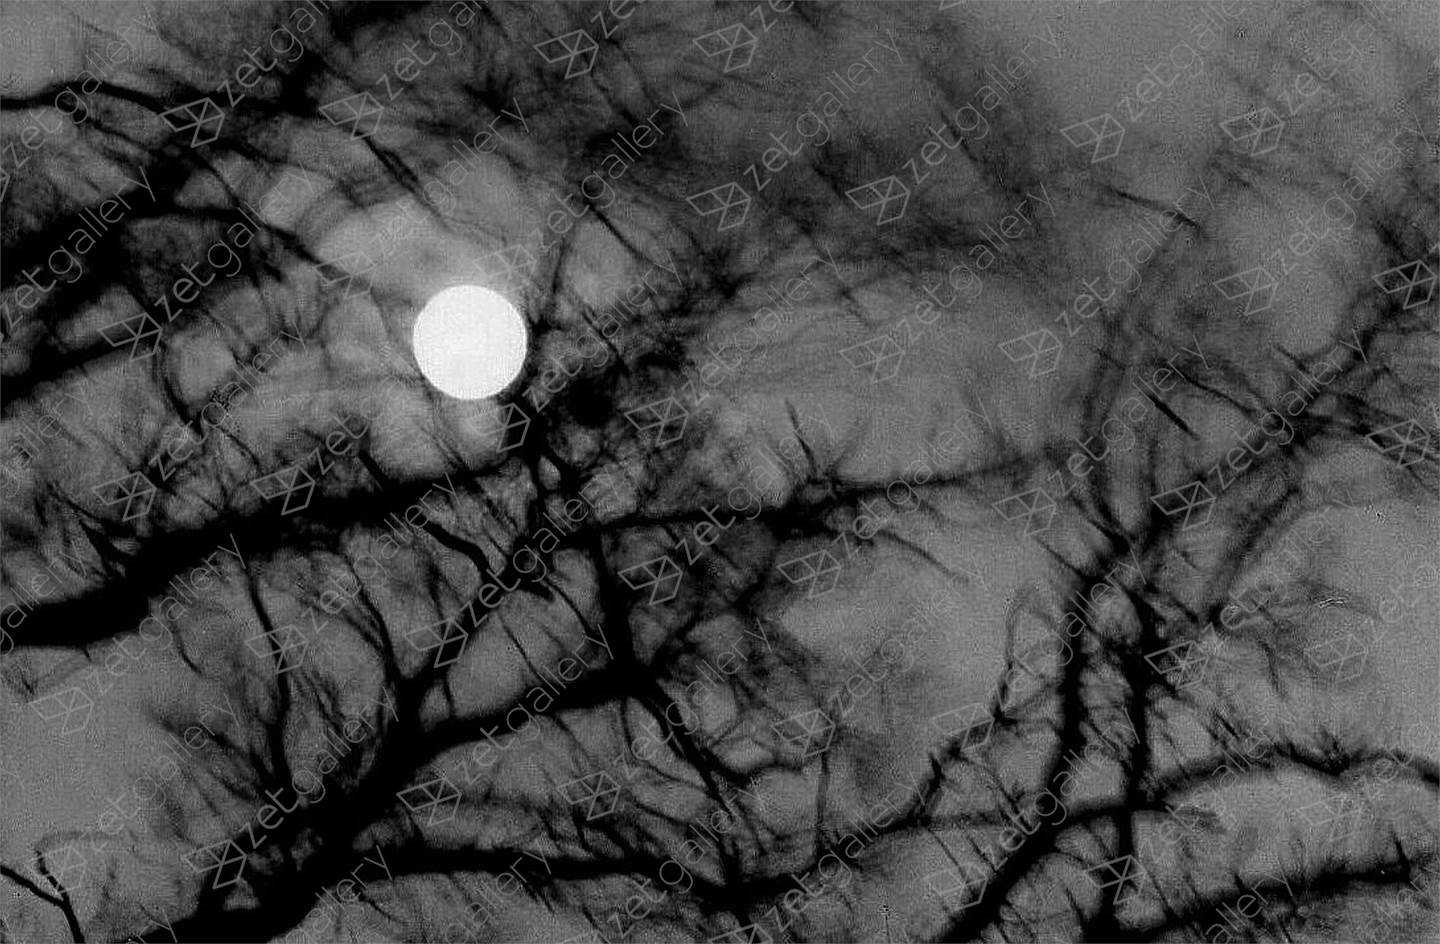 Full-Moon-Night, Fotografia Analógica Preto e Branco original por Heinz Baade